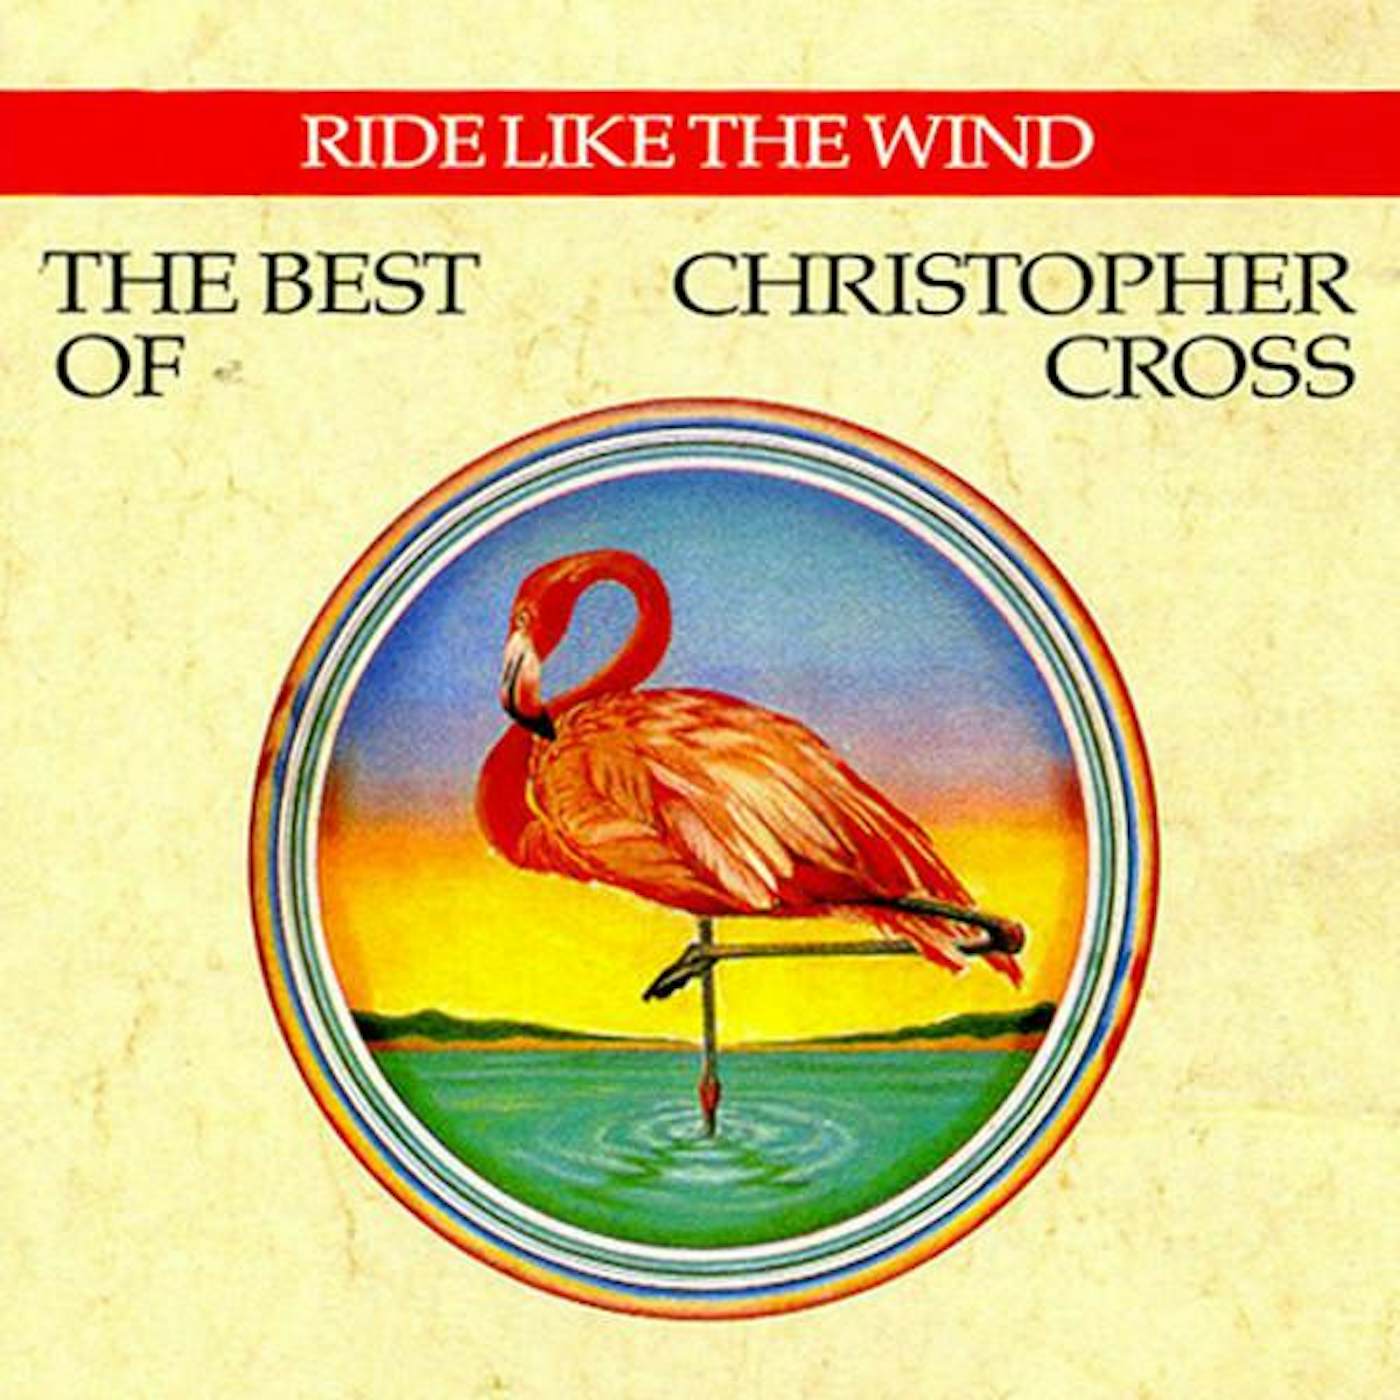 Christopher Cross BEST OF CD